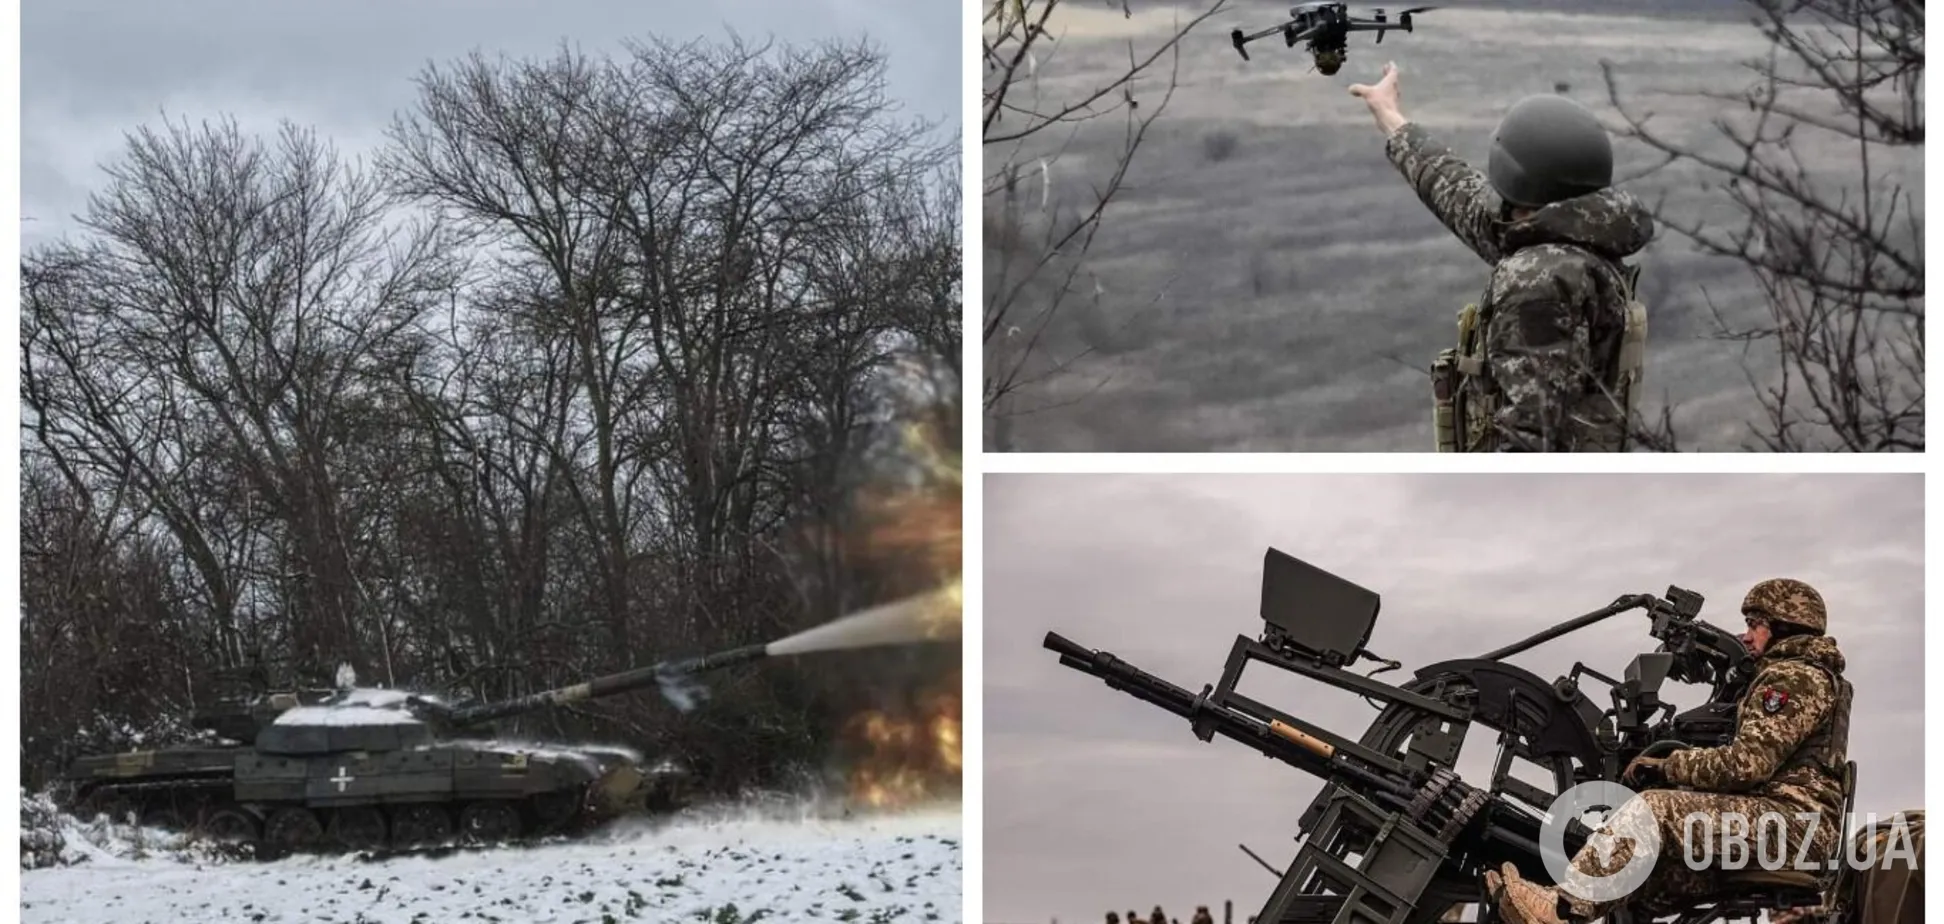 Нехватка боеприпасов может вынудить украинские войска принимать сложные решения – ISW